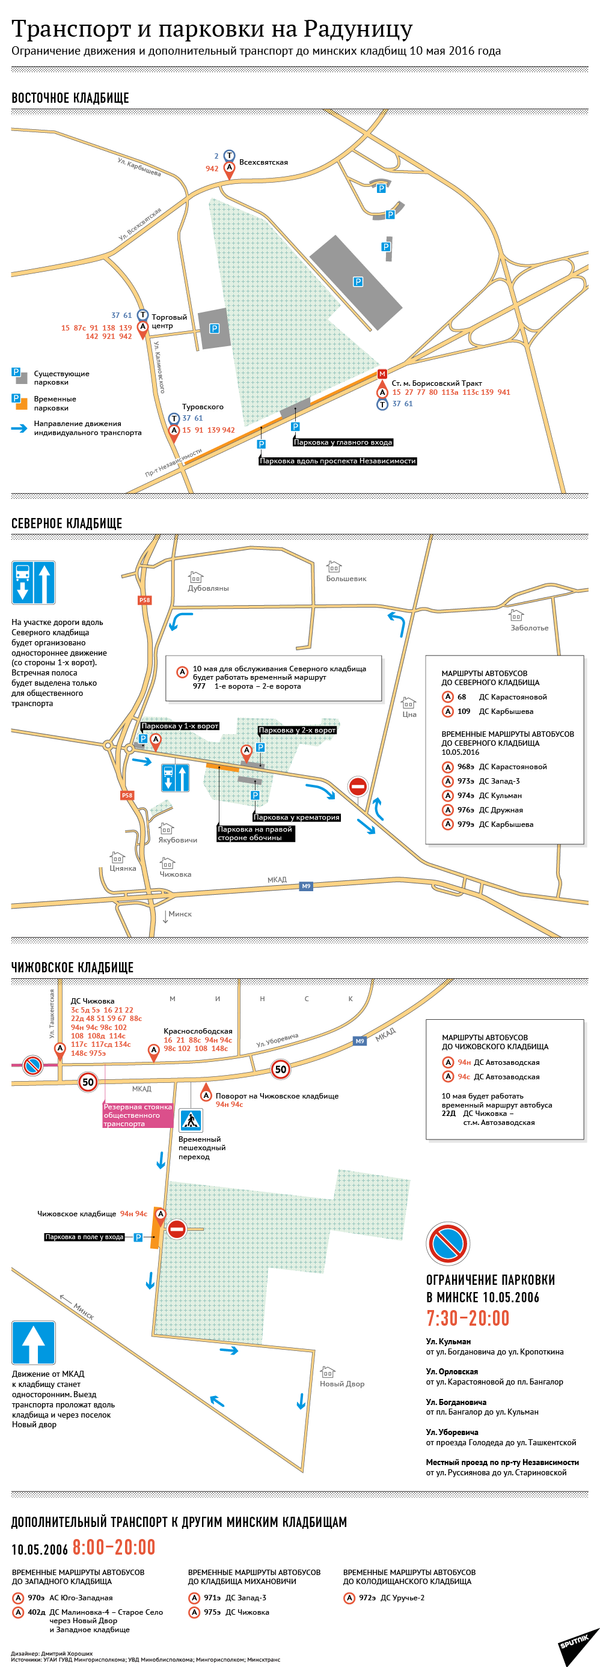 Инфографика: Транспорт и парковки на Радуницу-2016 - Sputnik Беларусь